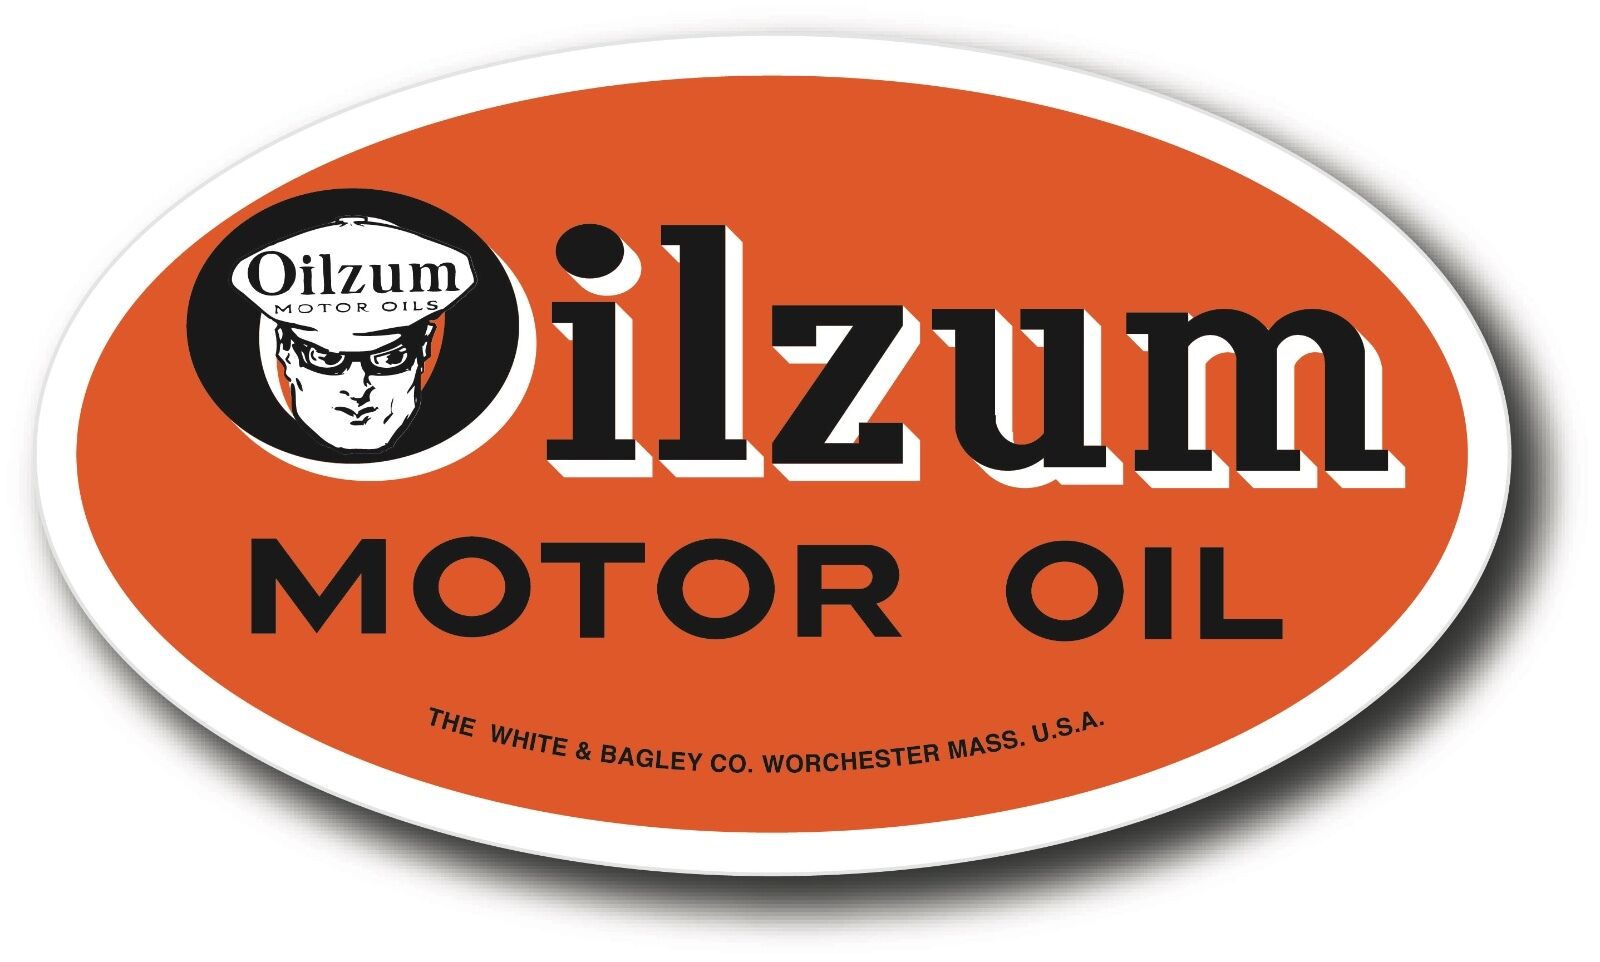 Oilzum Oil Super High Gloss Outdoor 5 1/4" X 3" Oil Decal Sticker